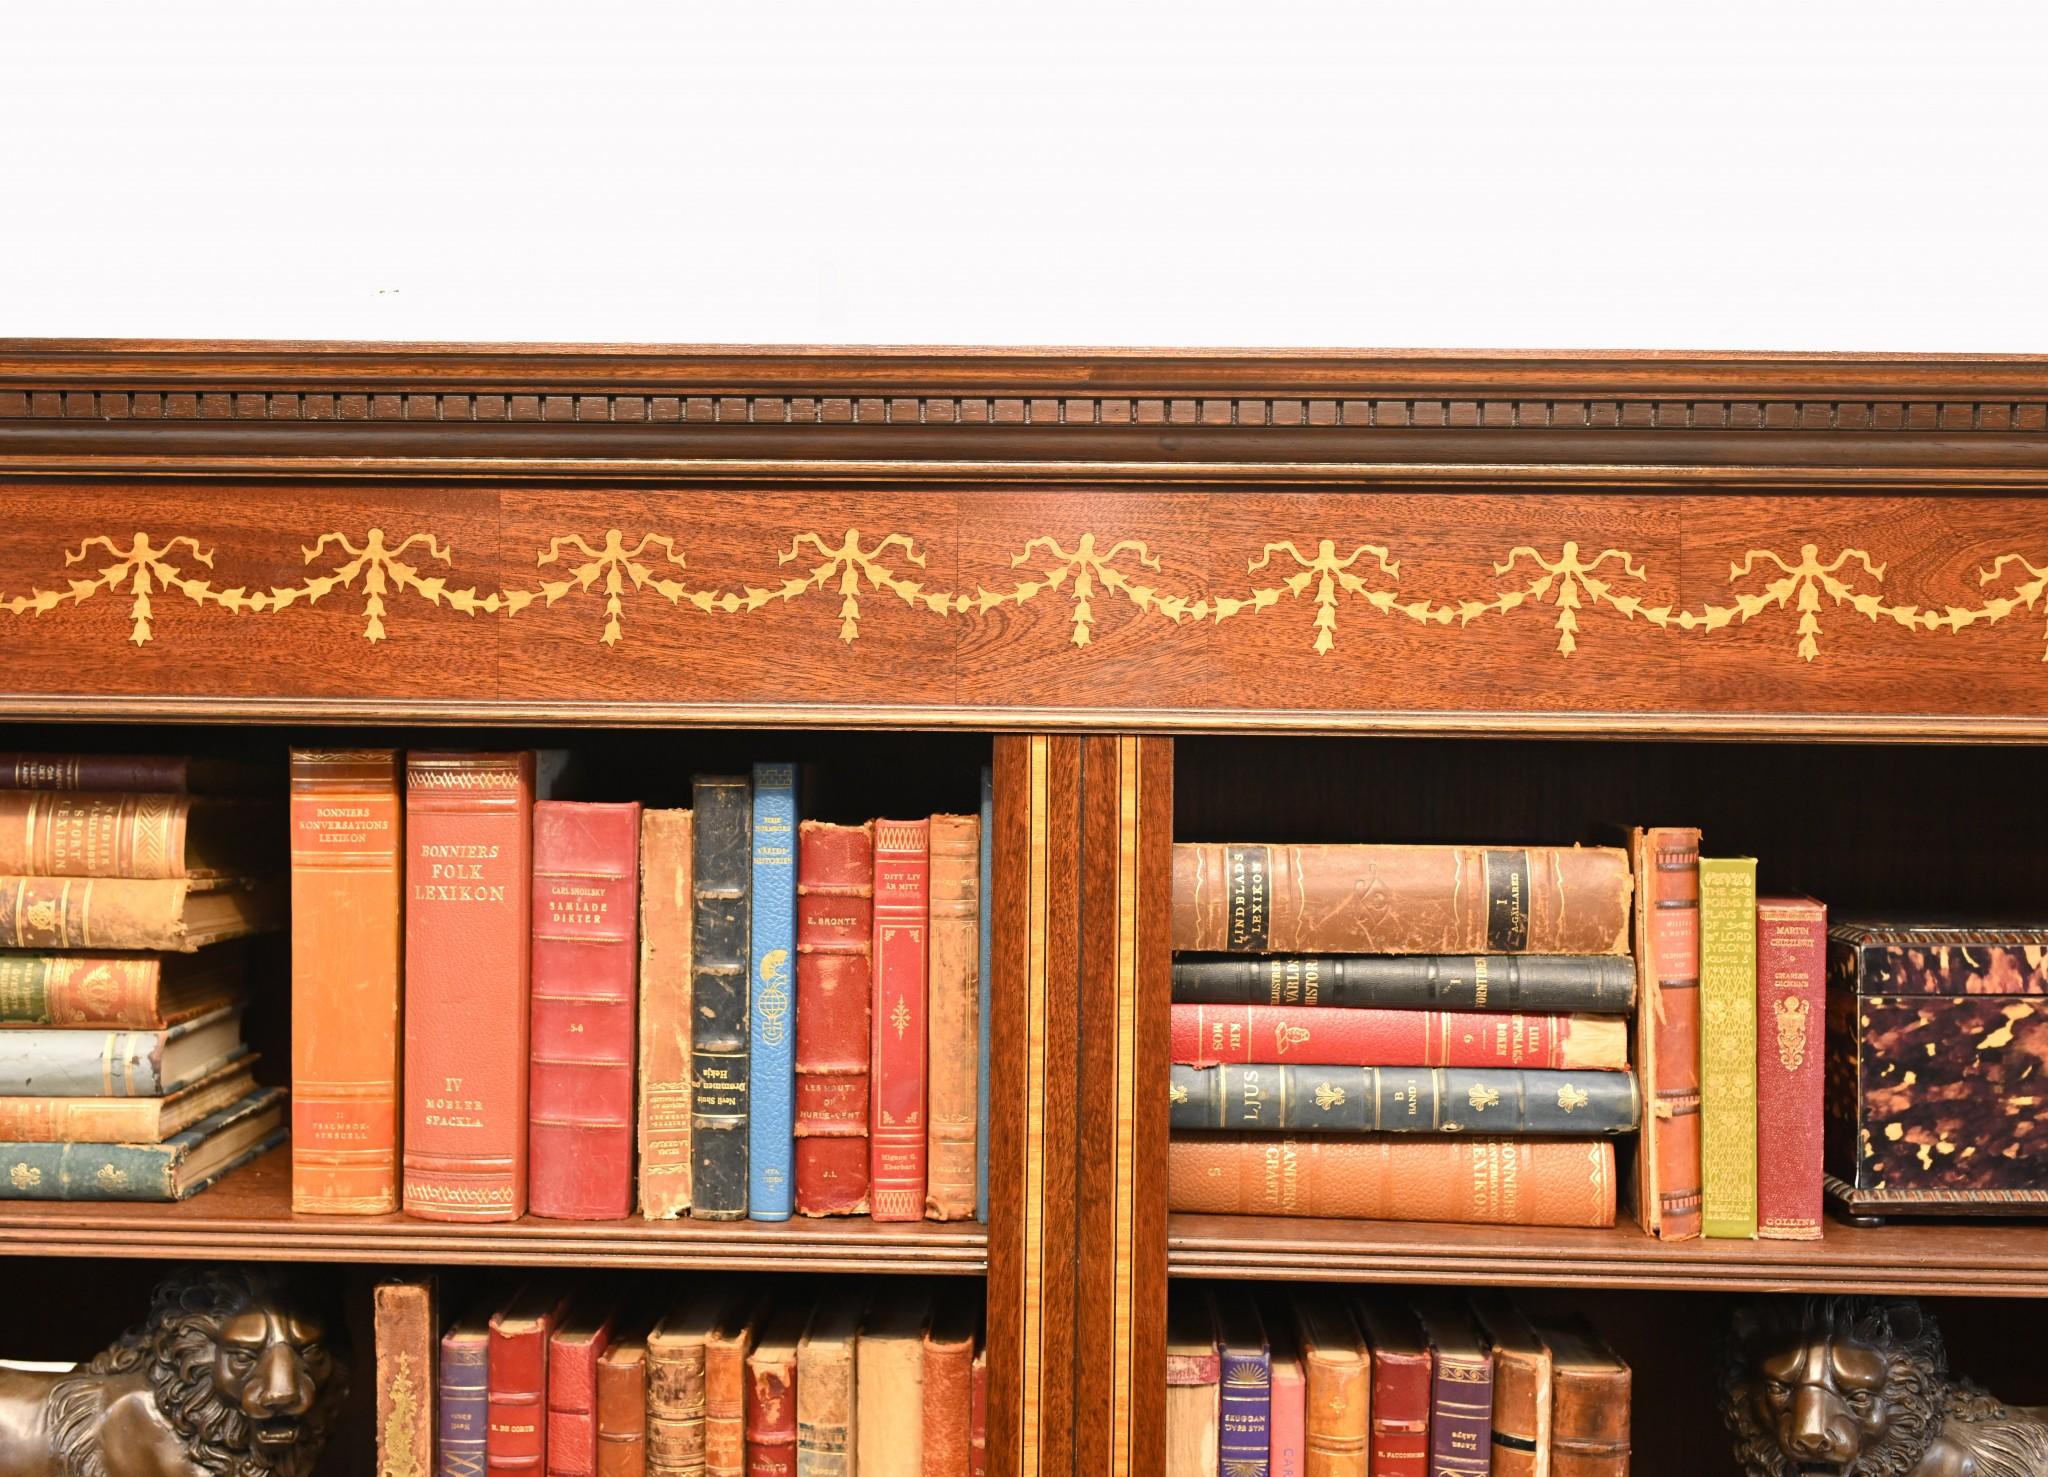 Sie sehen hier ein wunderschönes offenes Bücherregal aus englischem Mahagoni mit Doppelfront und Sheraton-Intarsien. Ich hoffe, die Fotos werden diesem atemberaubenden Stück gerecht, in natura ist es sicherlich noch beeindruckender.

Das Stück hat